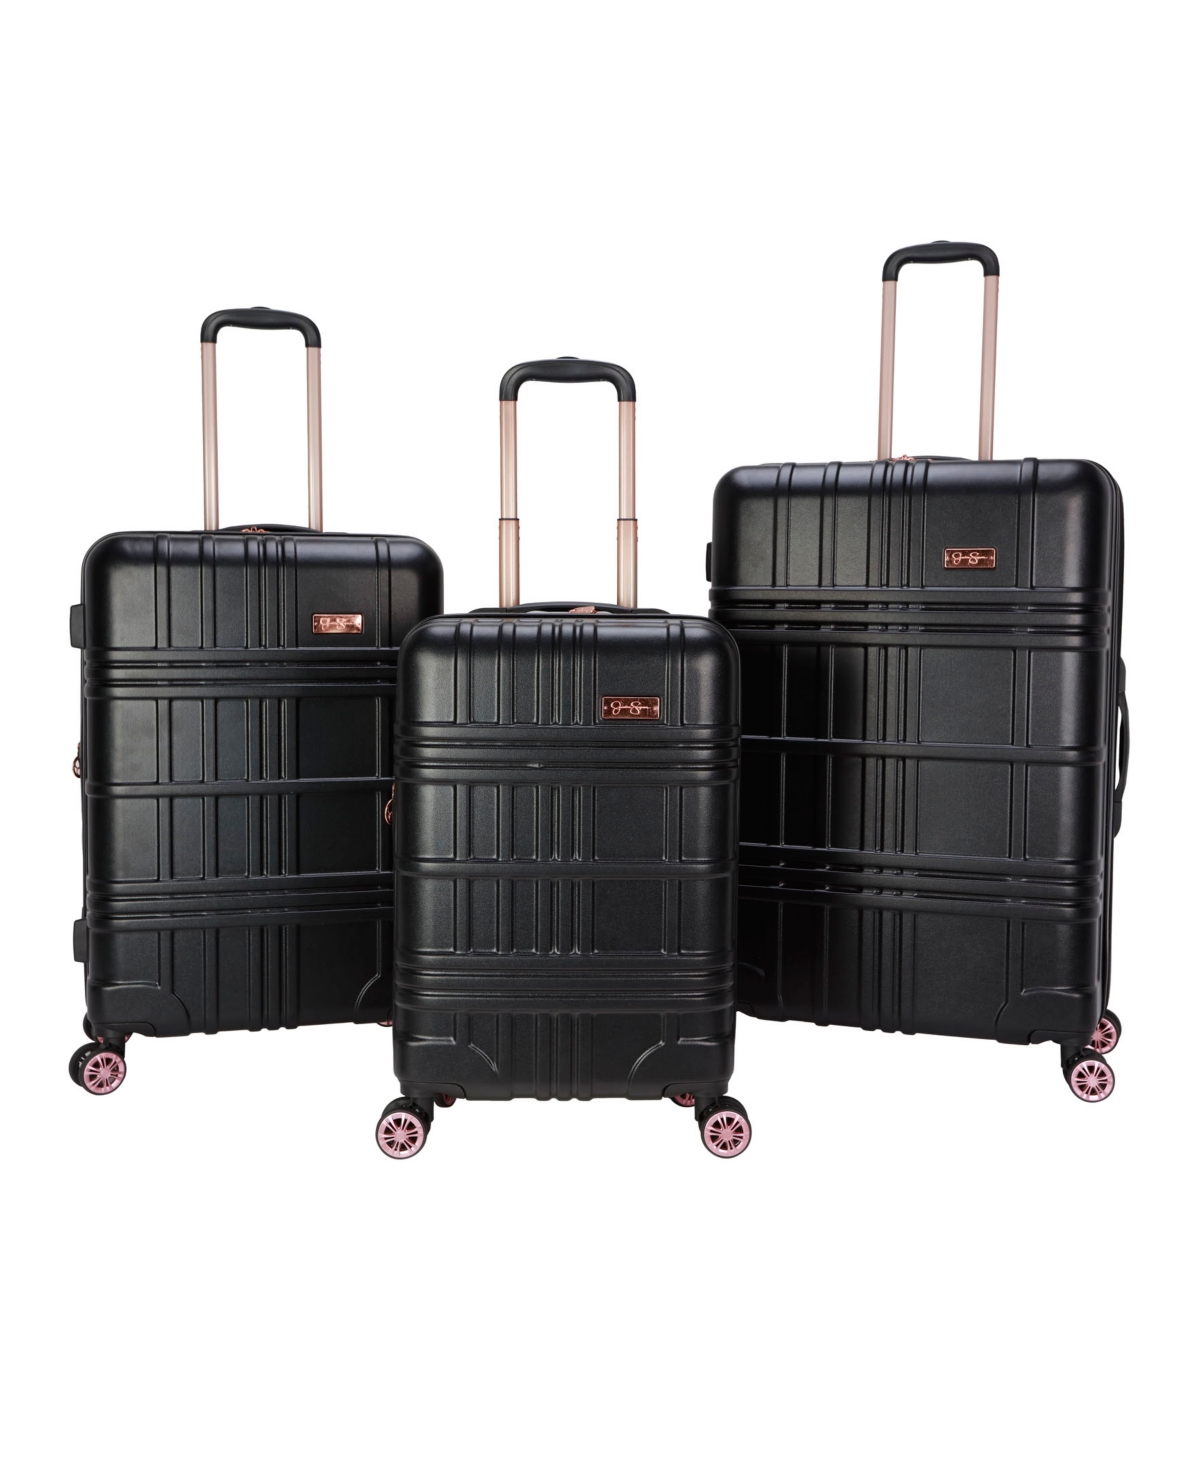 Jessica Simpson Jewel Plaid 3 Piece Hardside Luggage Set In Black